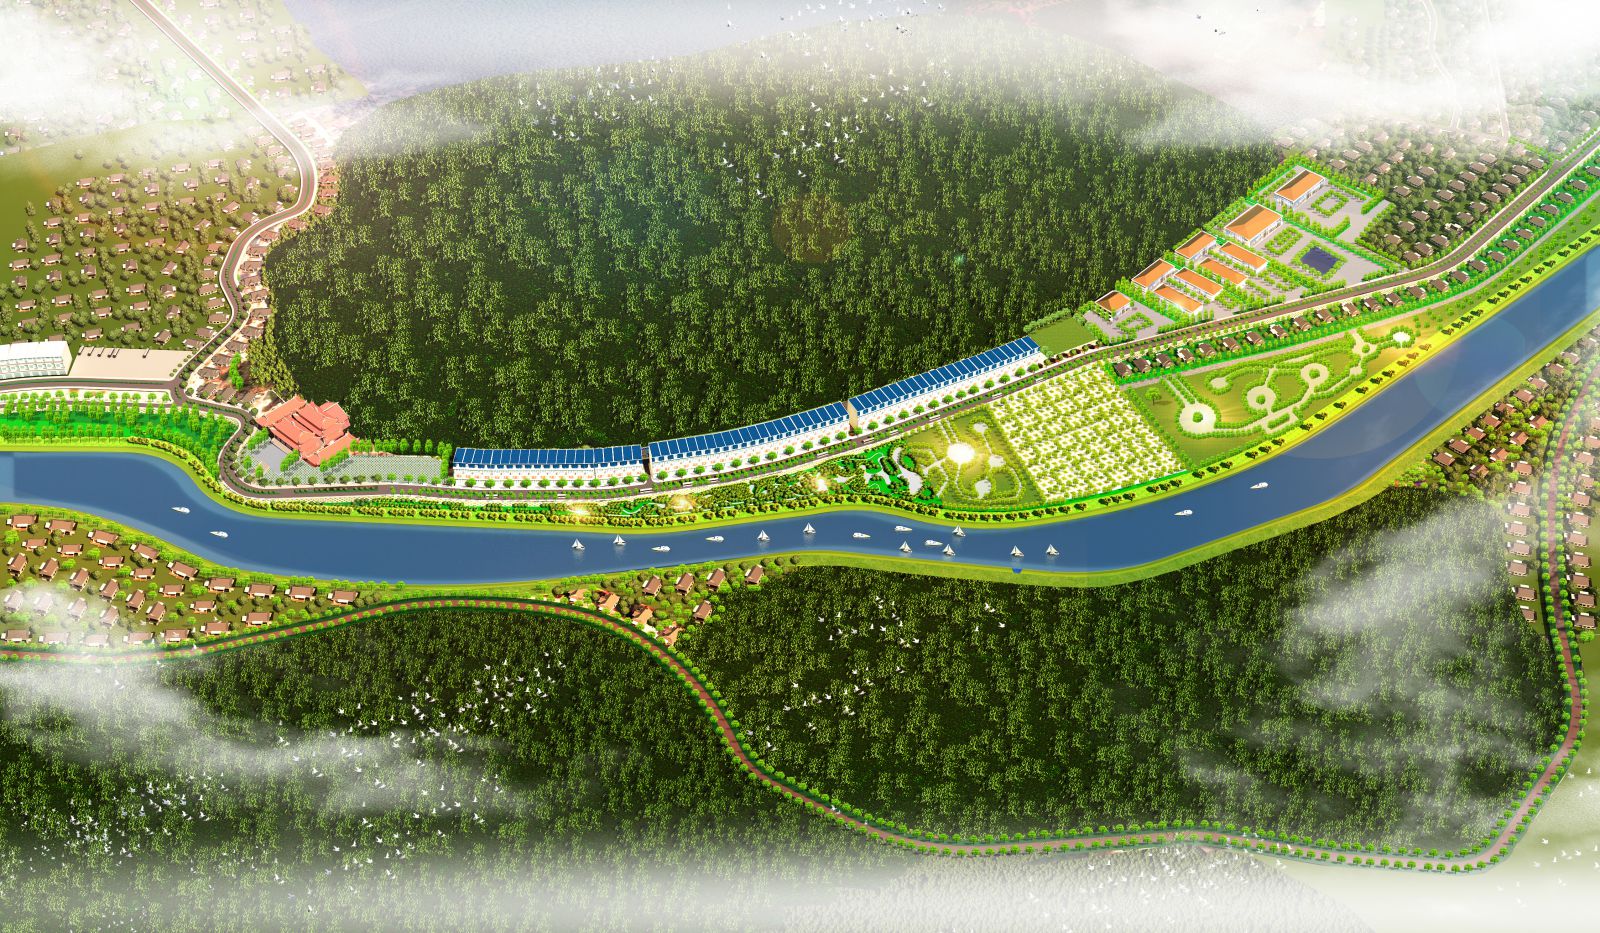 Phố cảnh tổng thể Khu dân cư Hà Sơn Green River